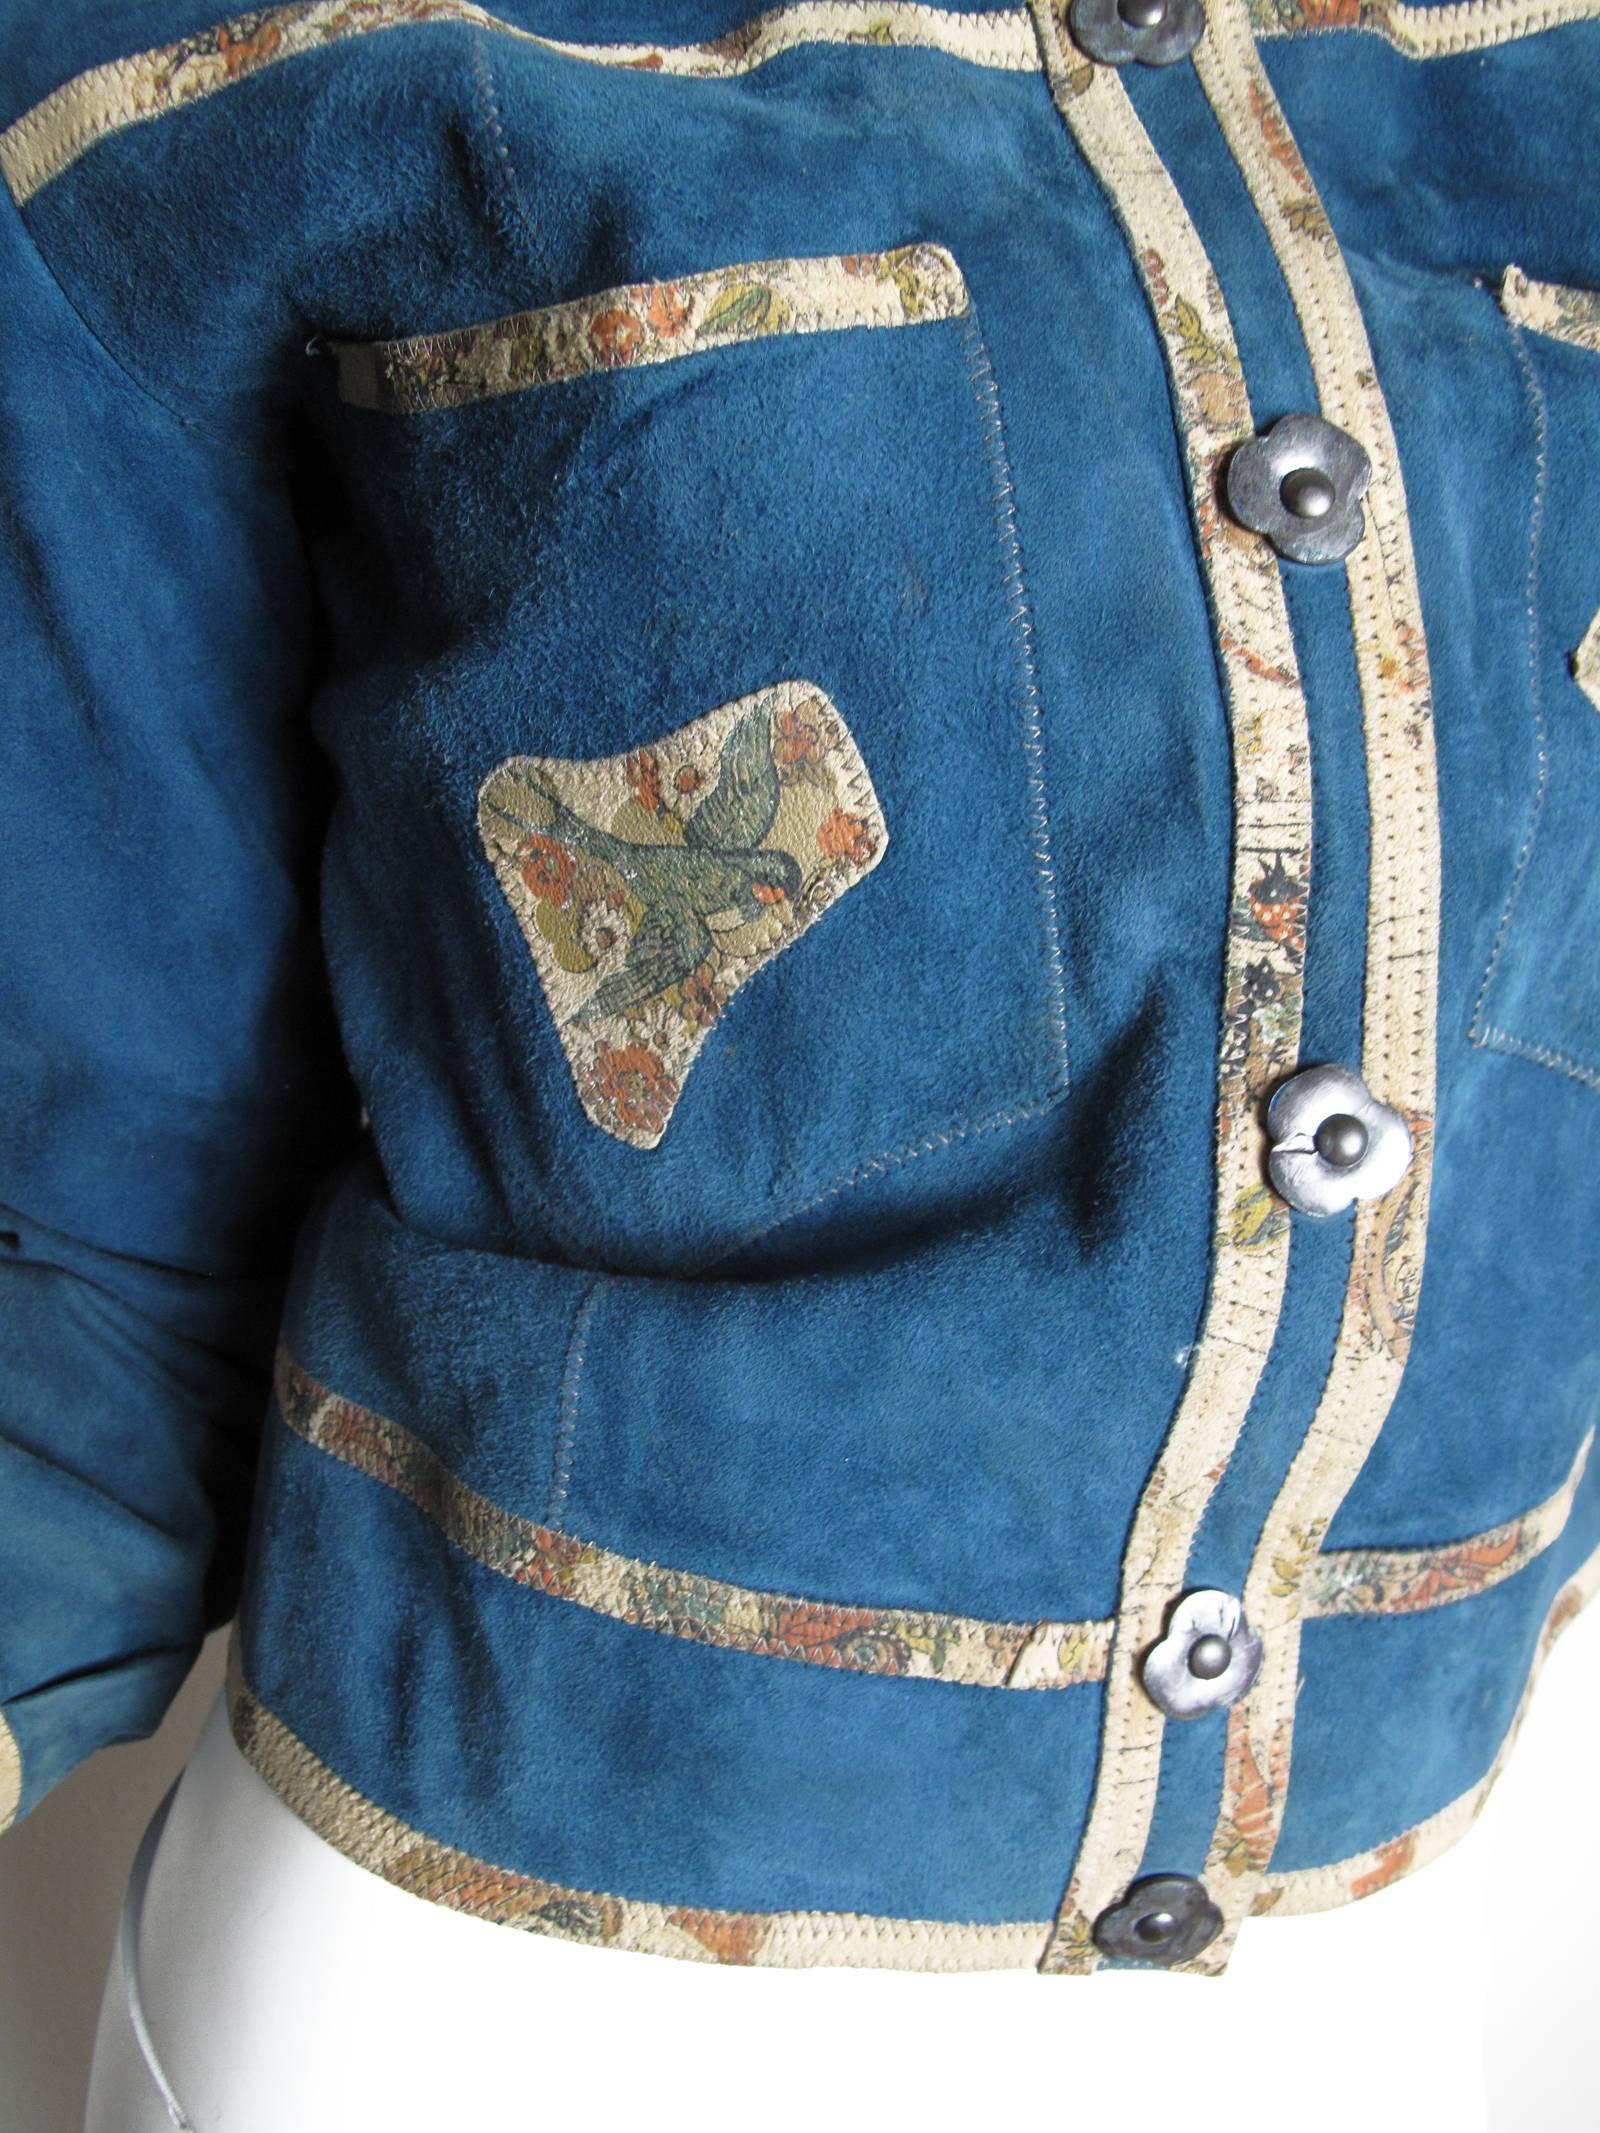 1970s patchwork suede jacket